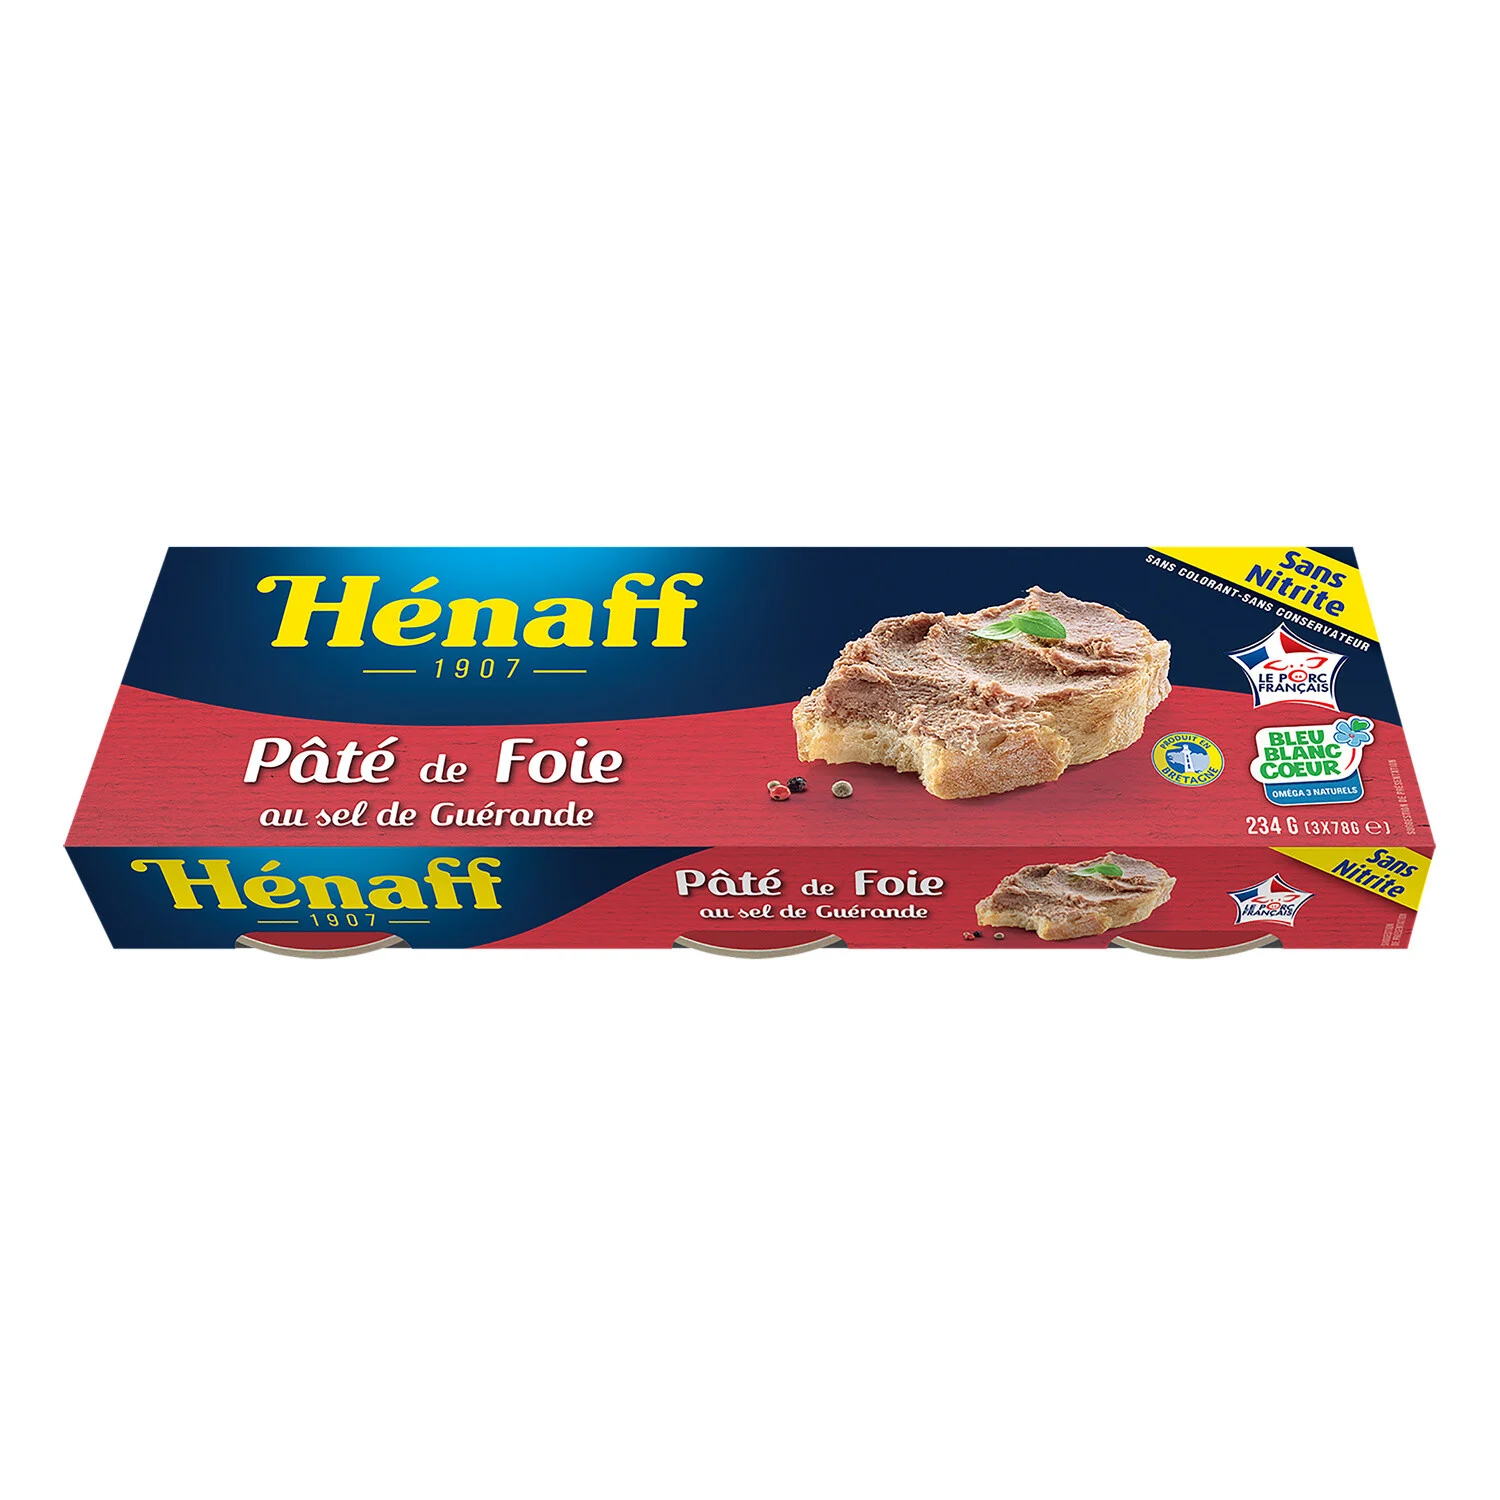 3x1 10 Paté Foie Henaff